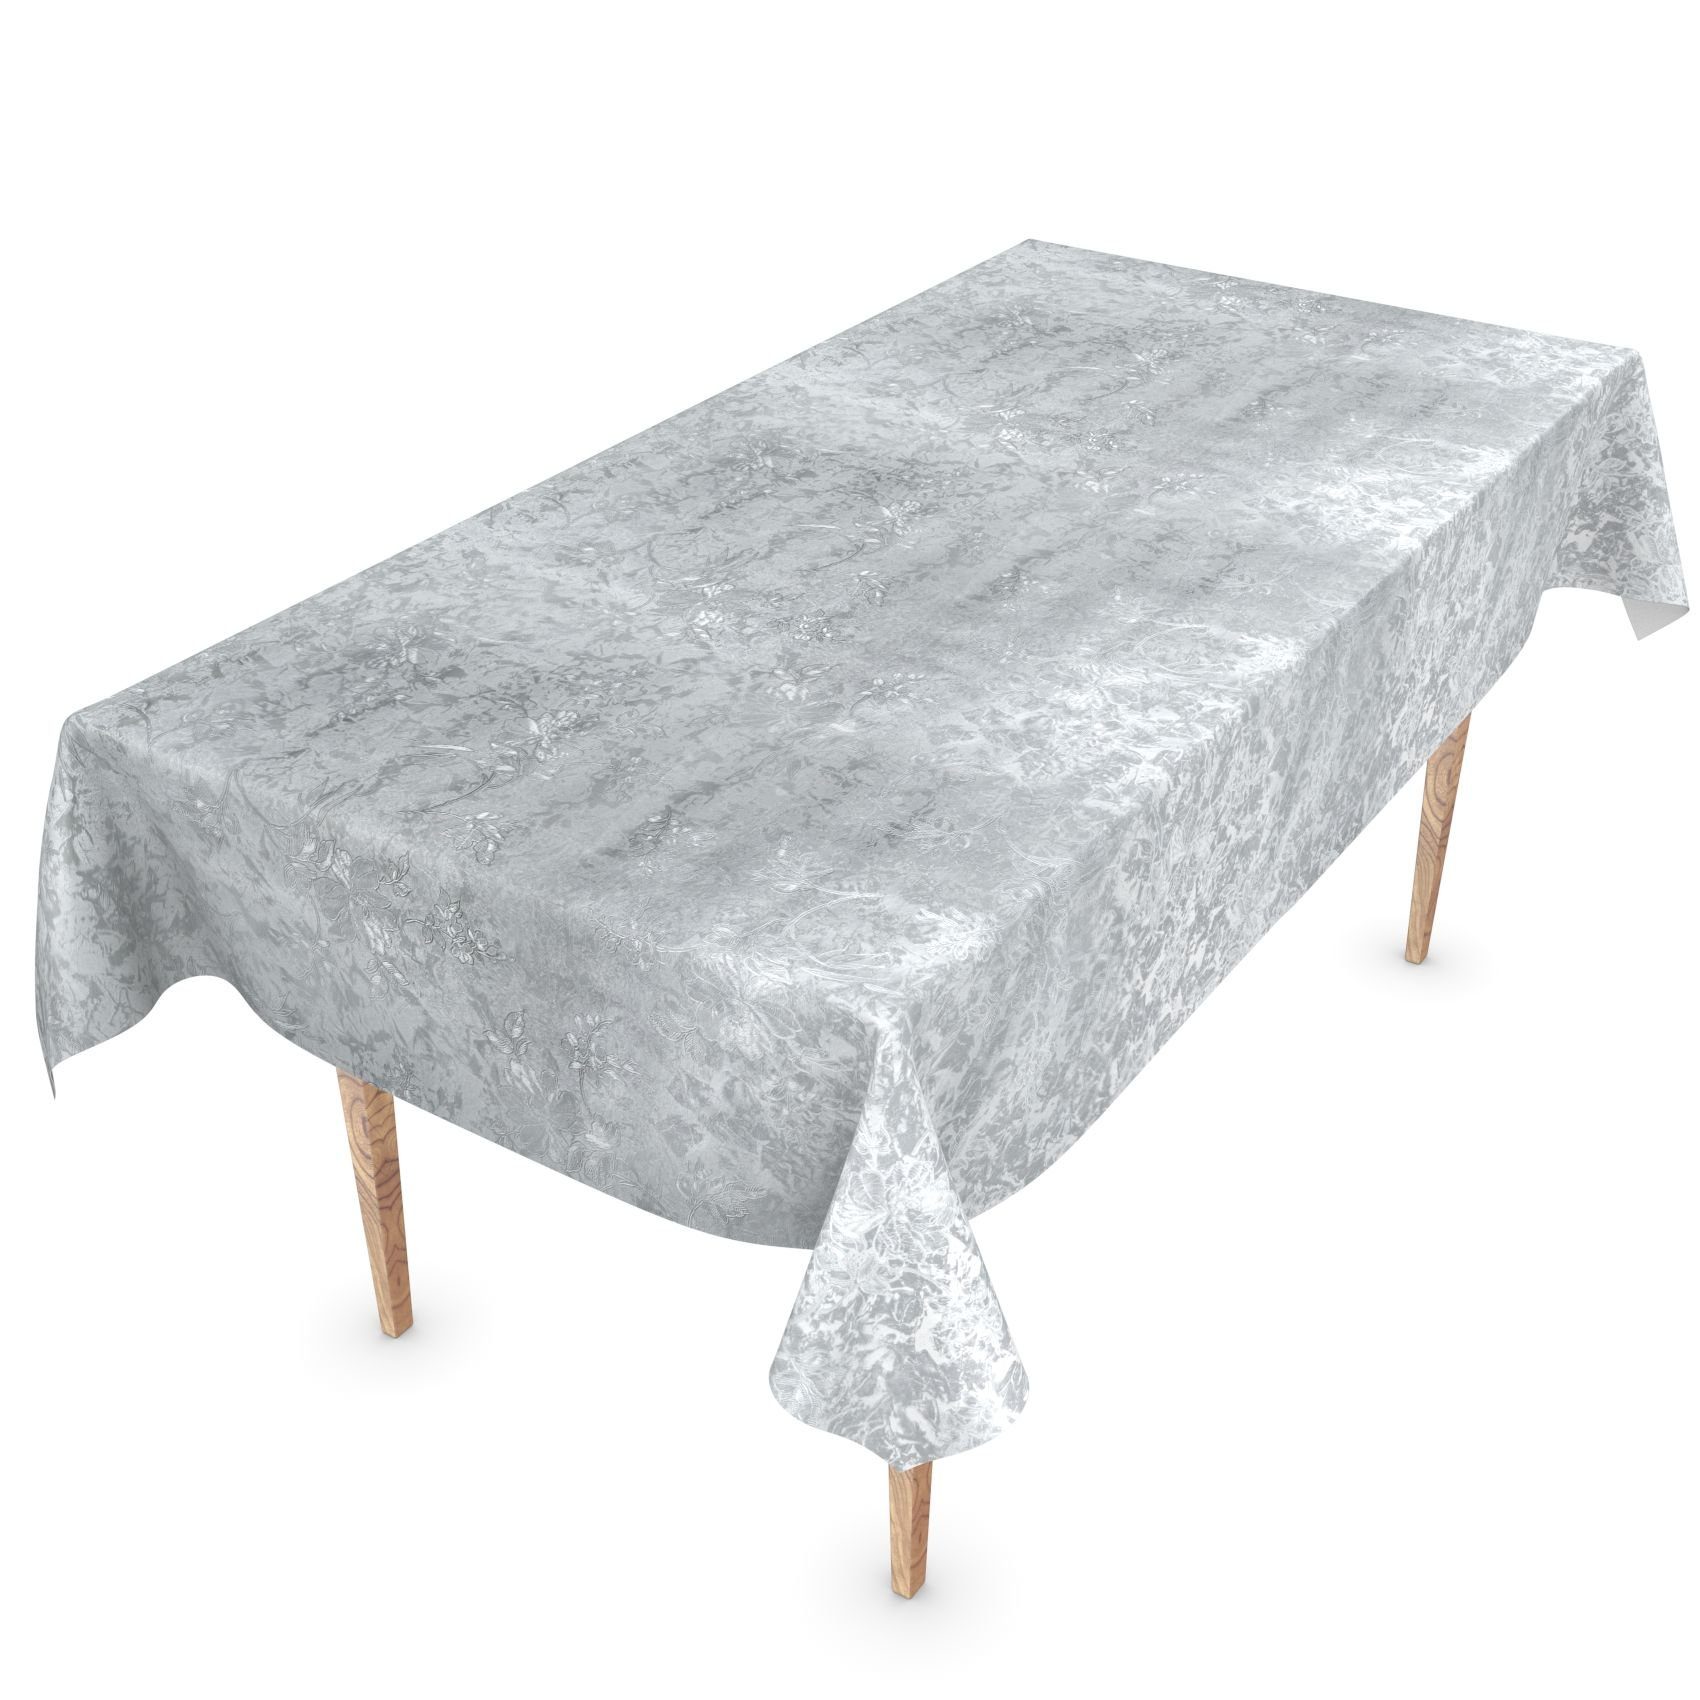 ANRO Tischdecke Breite Wasserabweisend Einfarbig Grau Robust Wachstuch Glatt 140, Tischdecke